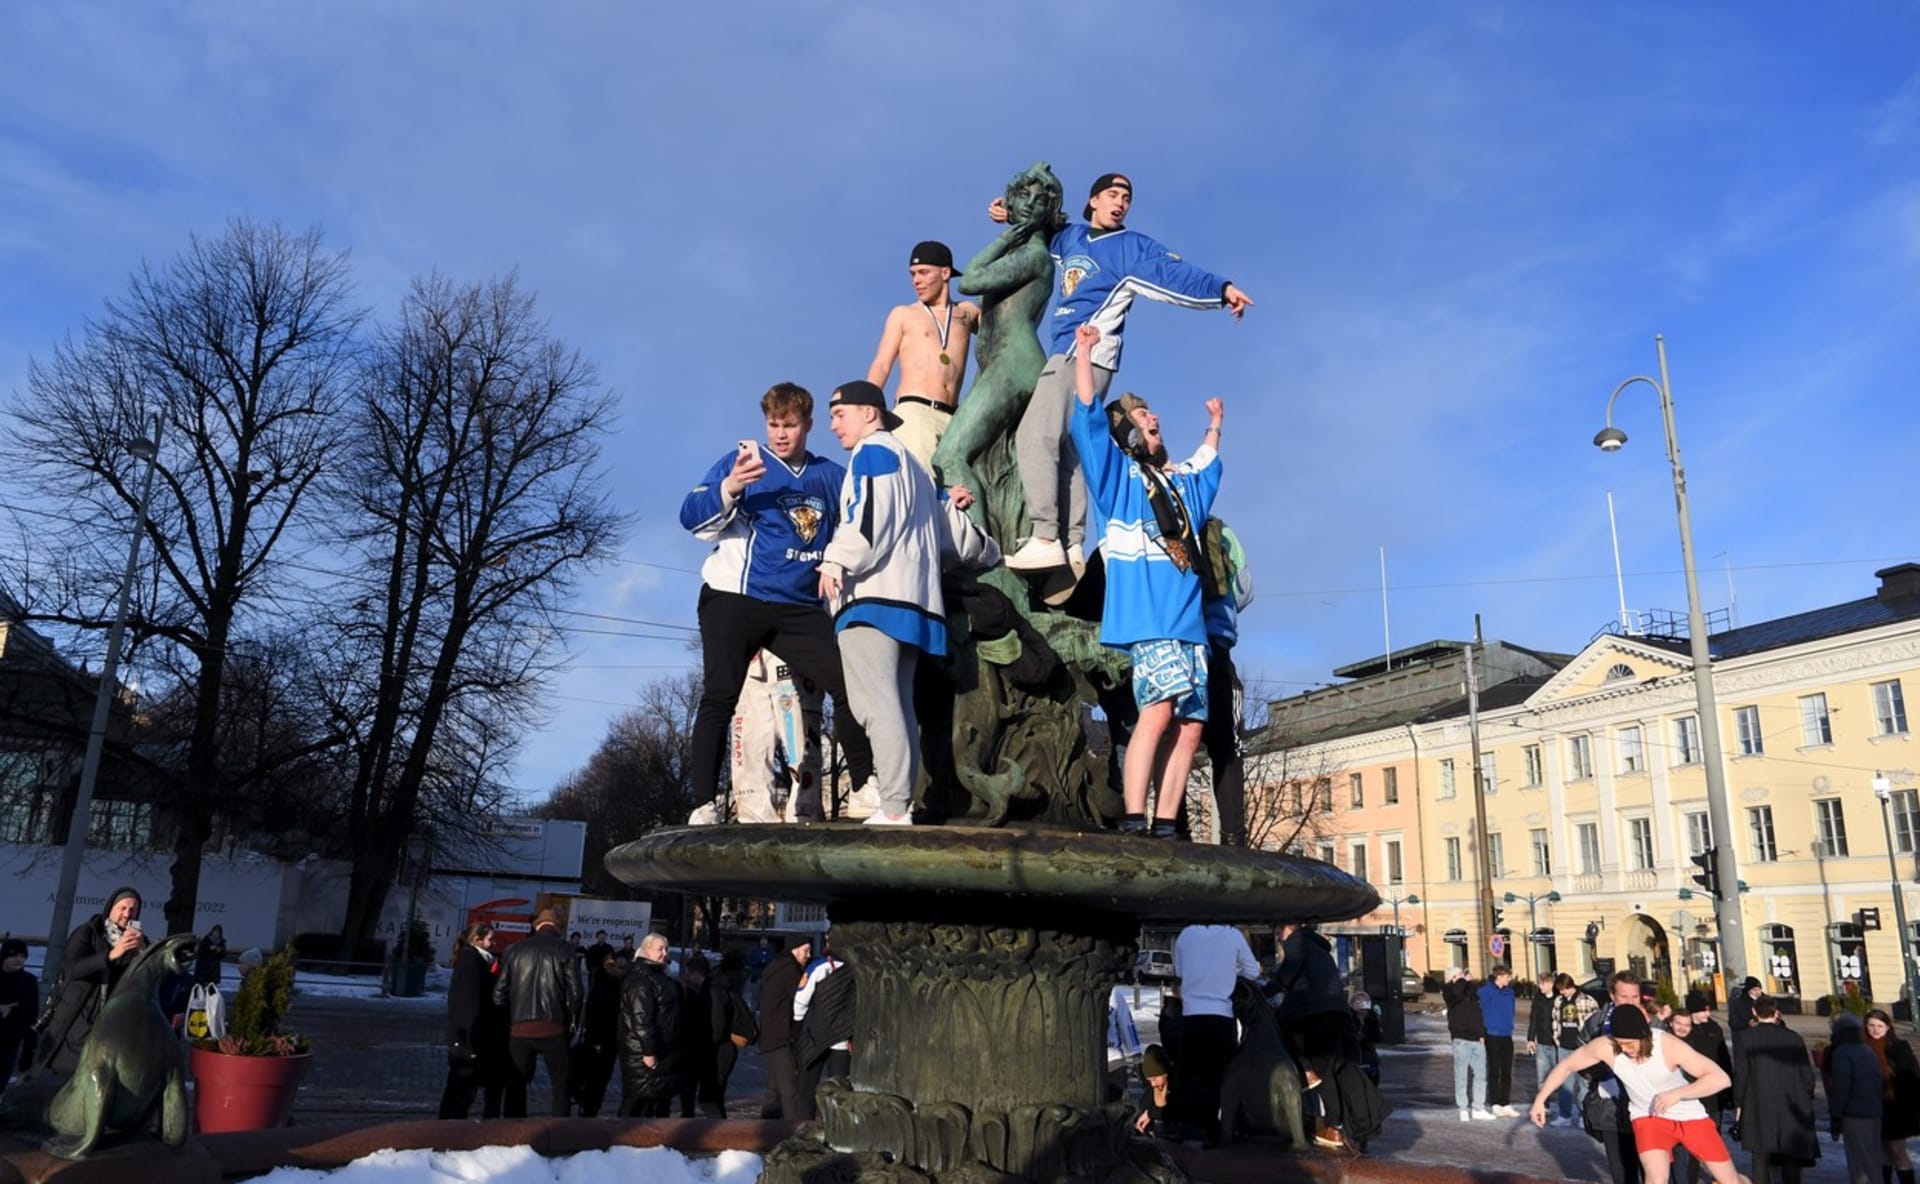 Takto se slavilo ve finských Helsinkách.